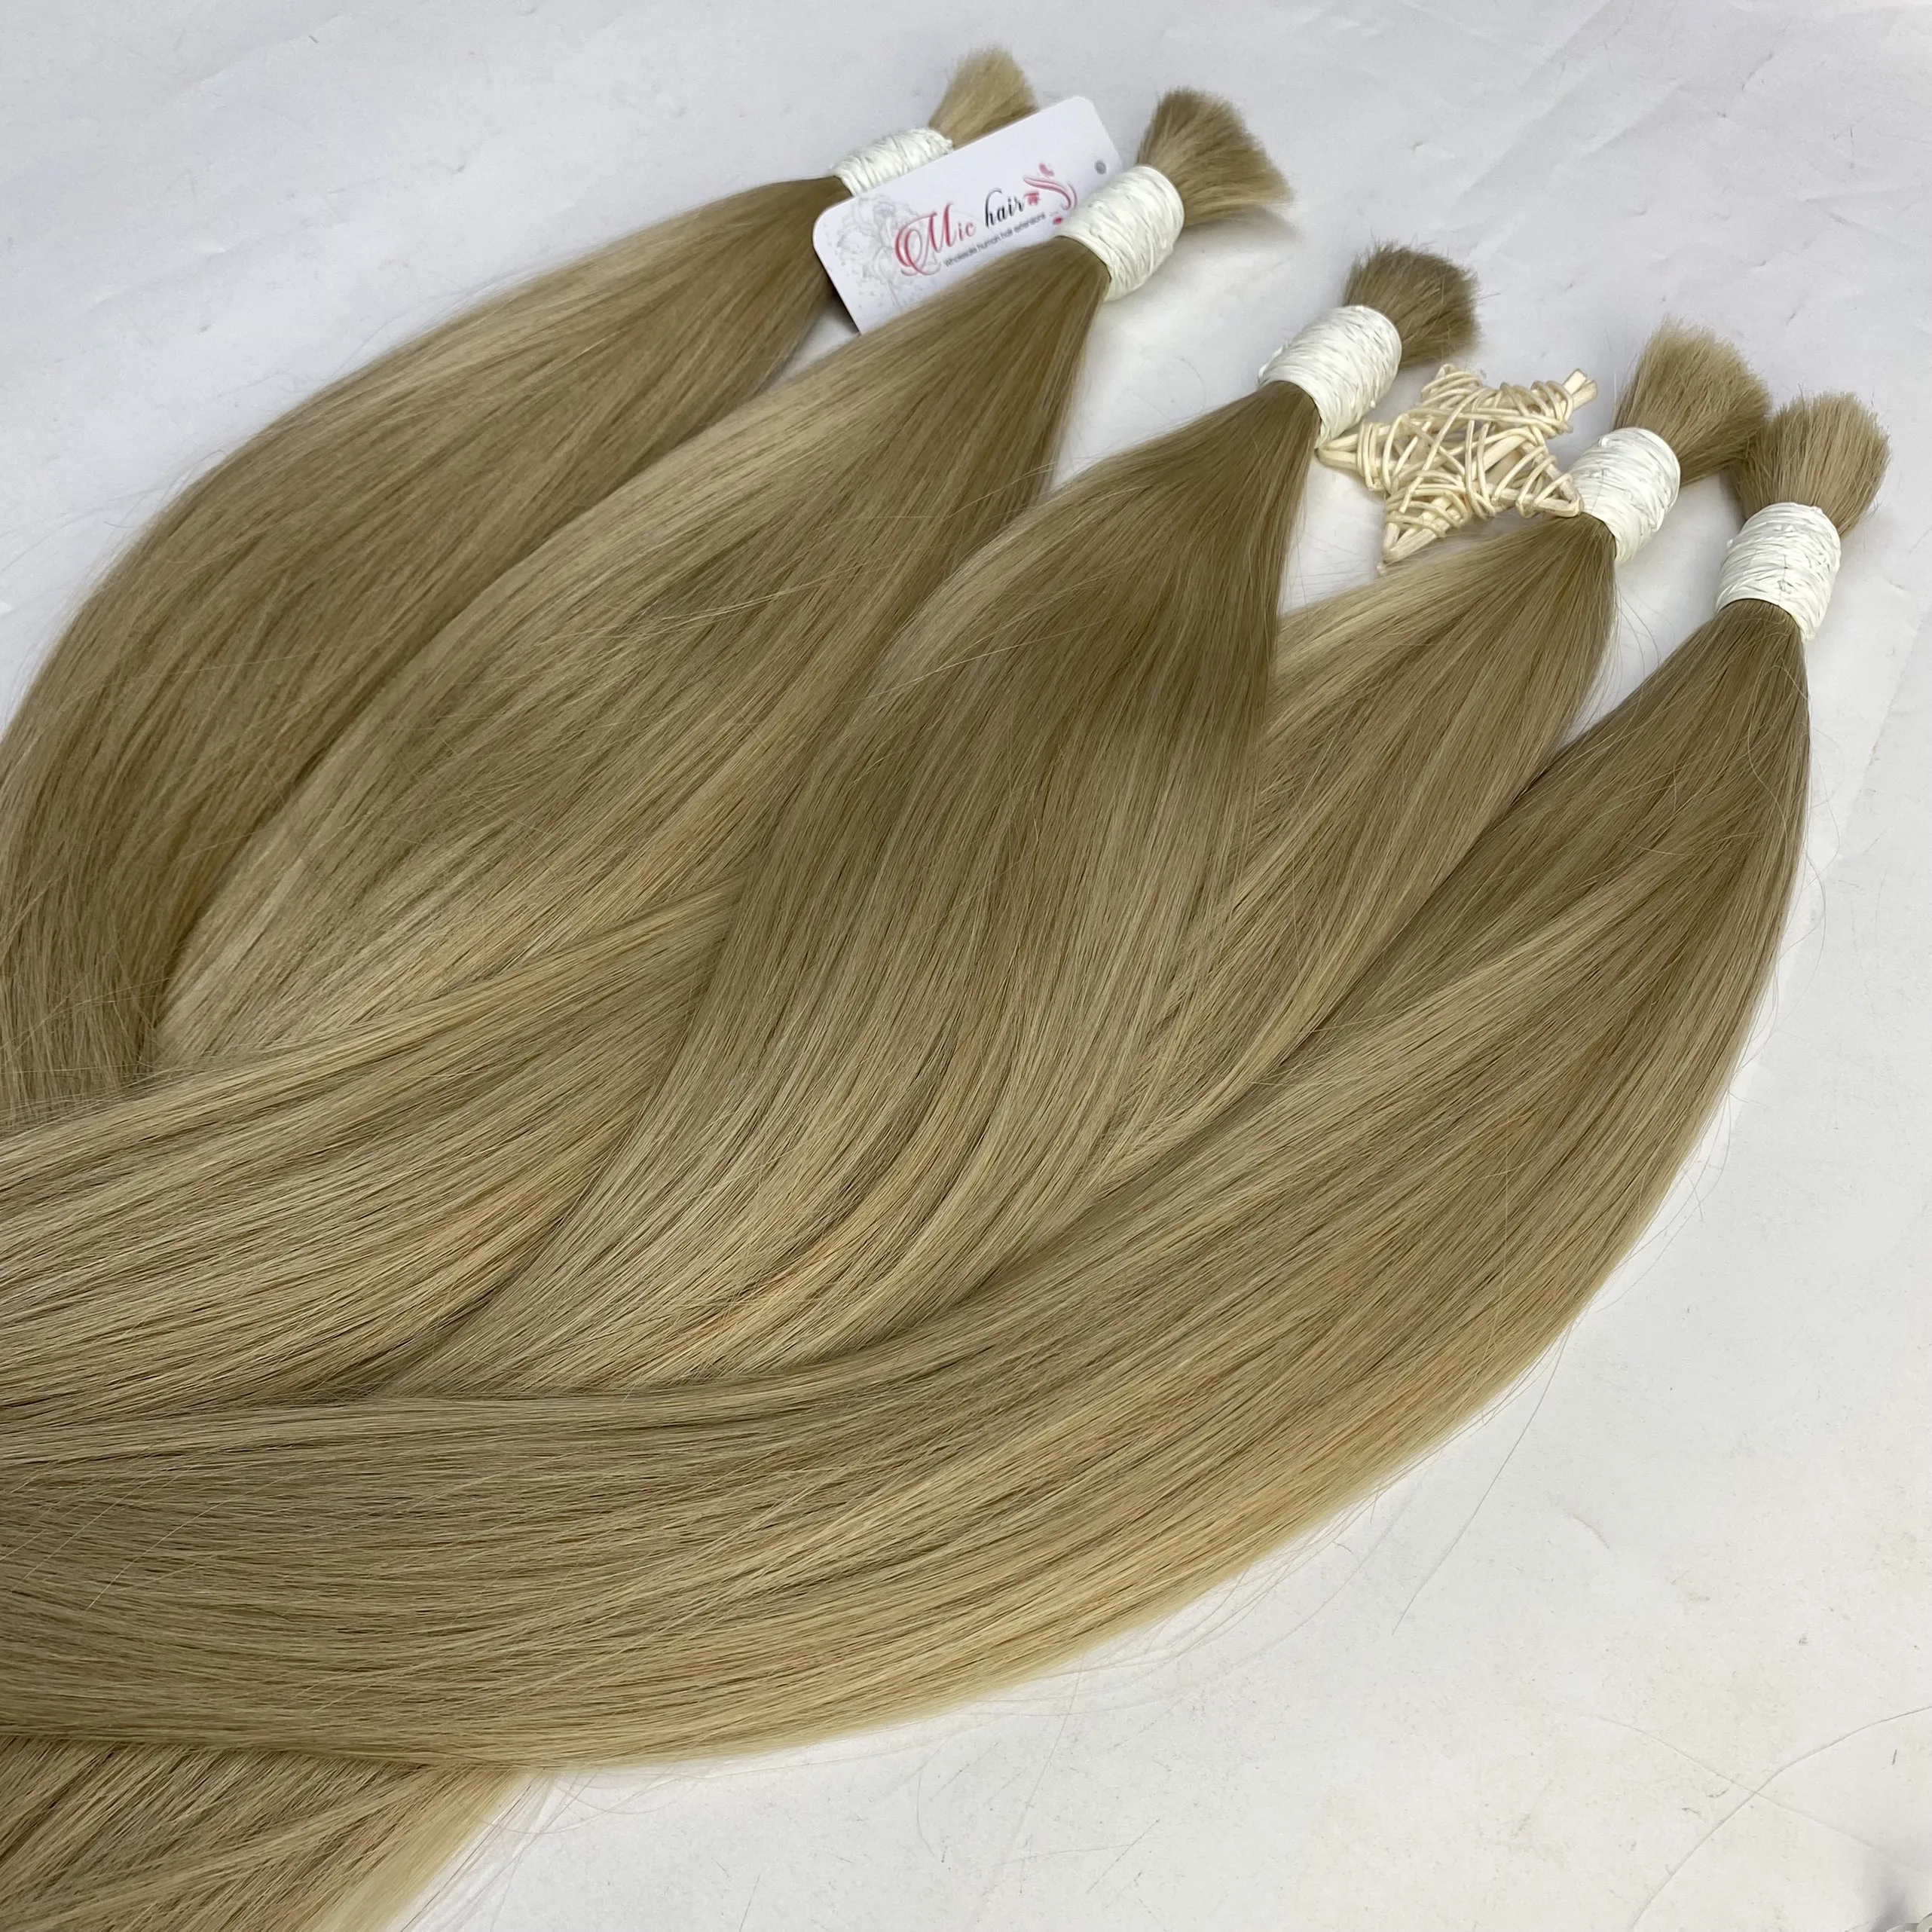 Nhà máy tóc vàng Nga: Hãy cùng khám phá những bức ảnh về ngôi nhà máy tóc vàng Nga nổi tiếng, nơi đã sản xuất ra những bó tóc vô cùng quý giá và mang lại ấn tượng mạnh mẽ với khách hàng. Đó là một nguồn cảm hứng vô tận cho những ai yêu đam mê làm đẹp.